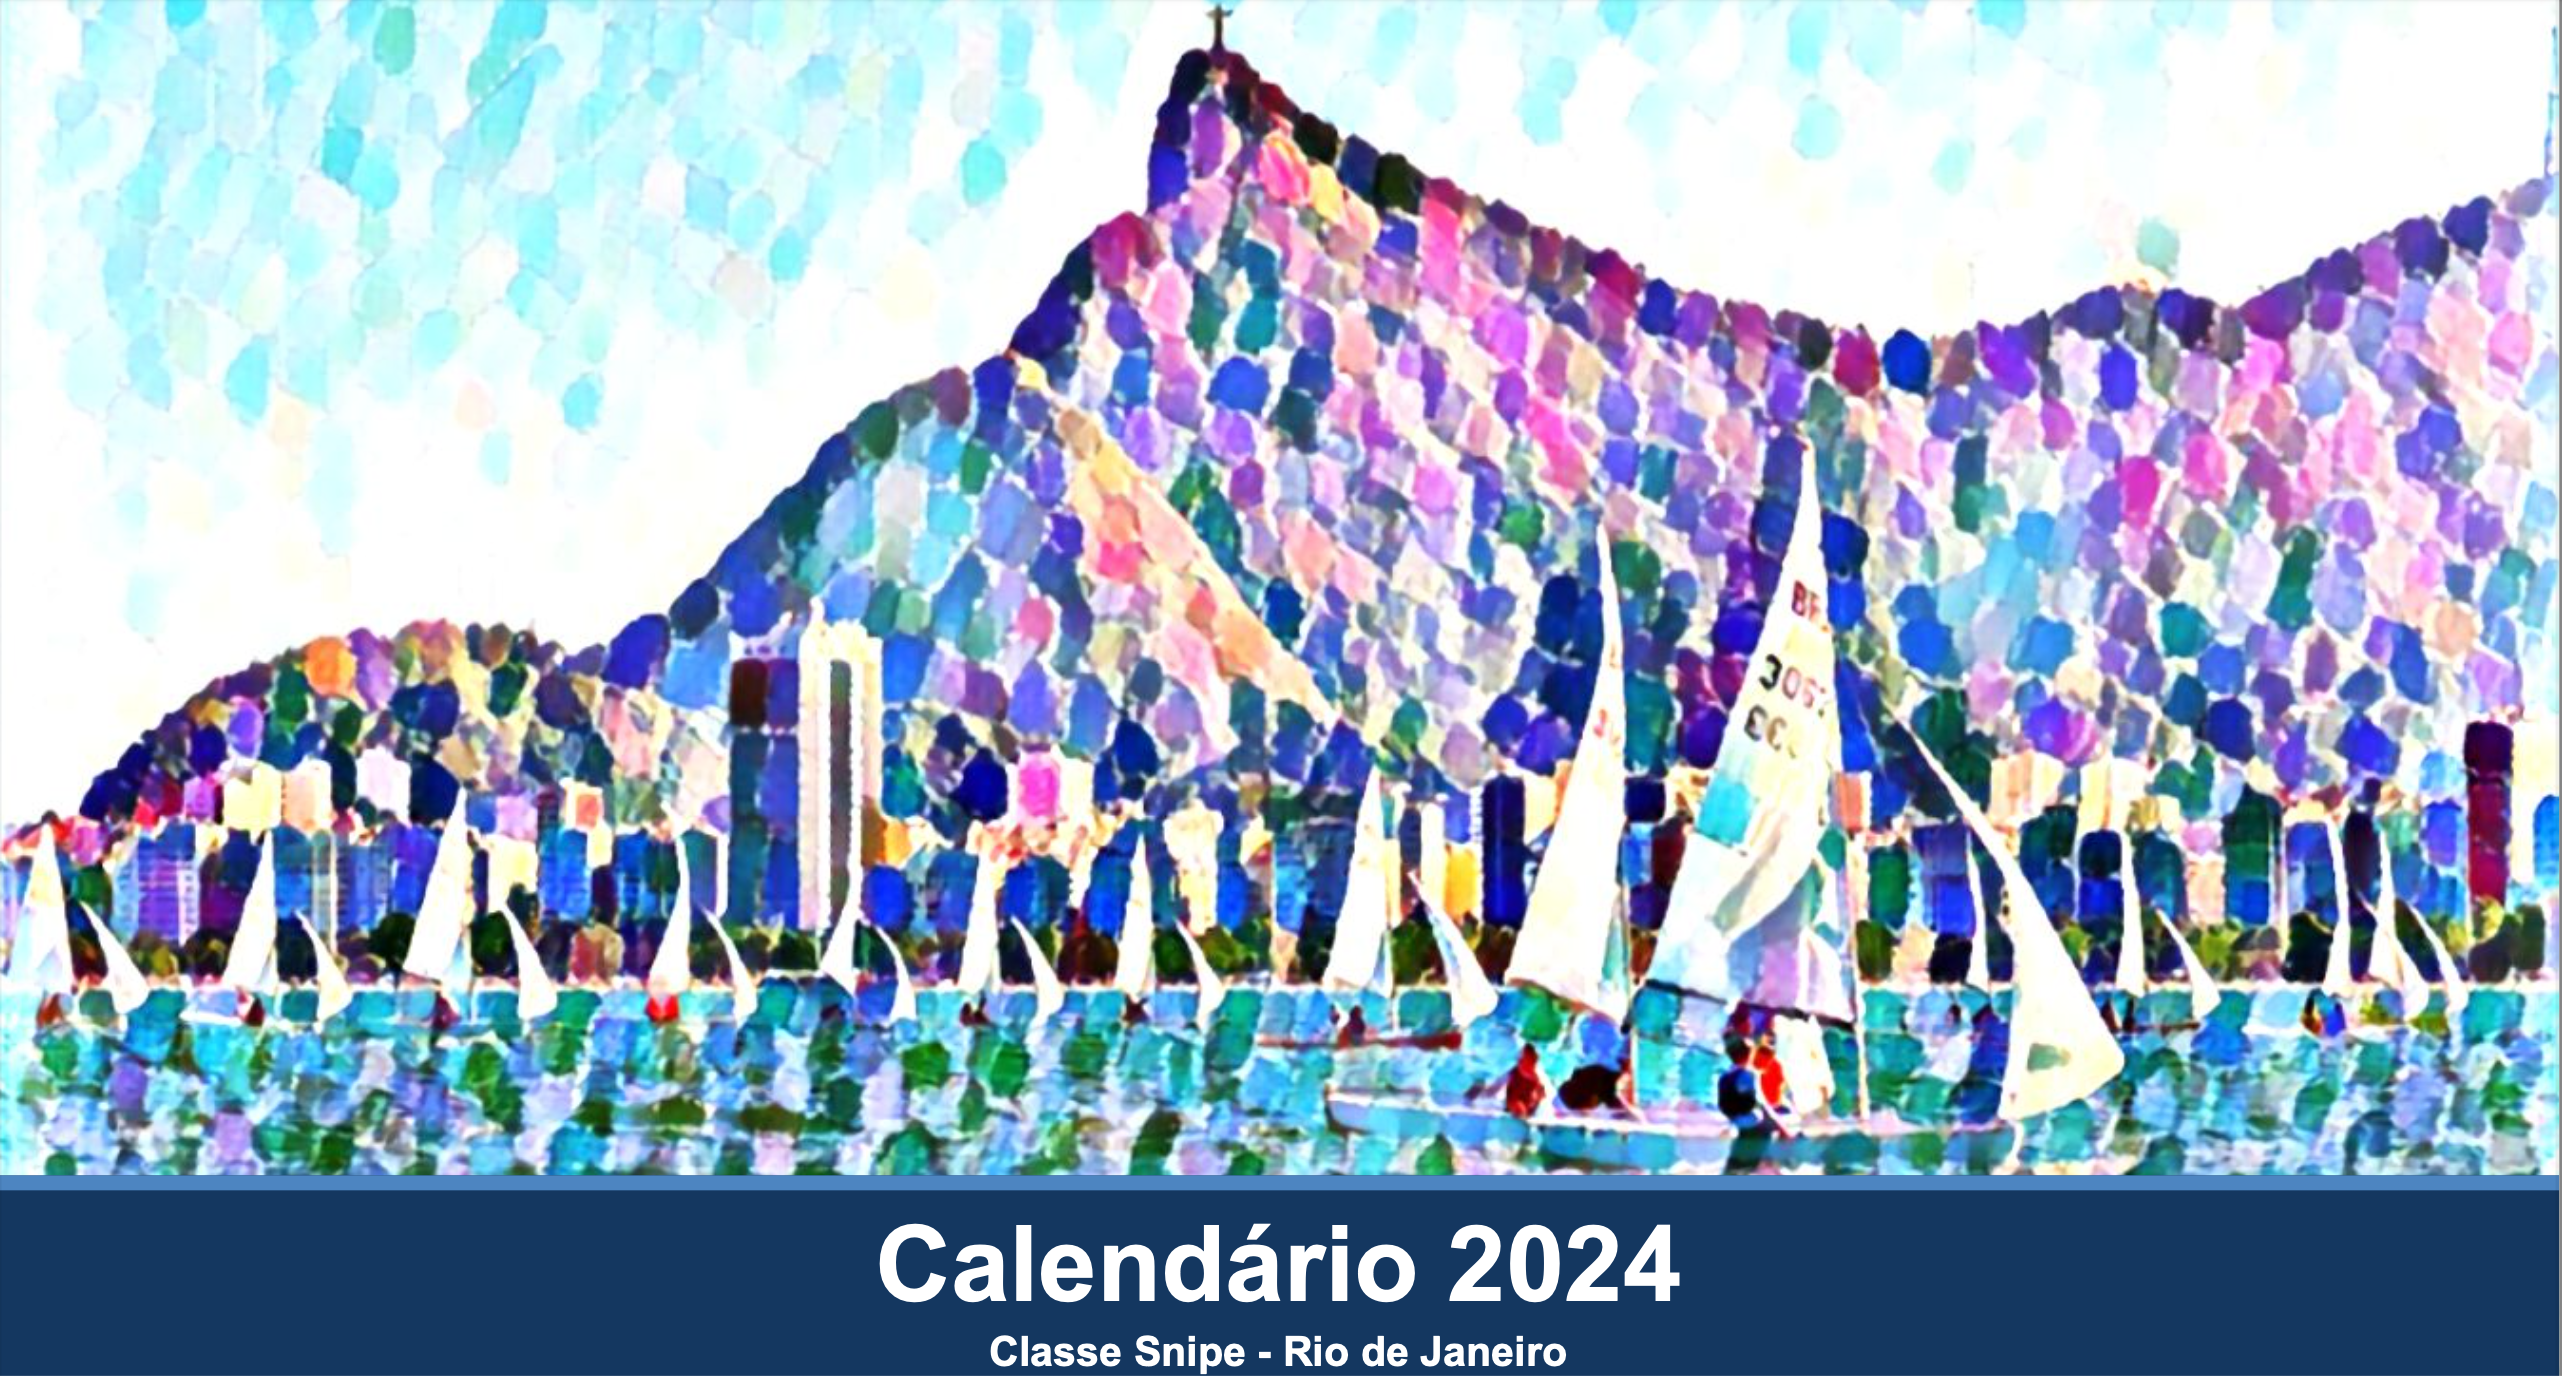 2024 in Rio de Janeiro Image